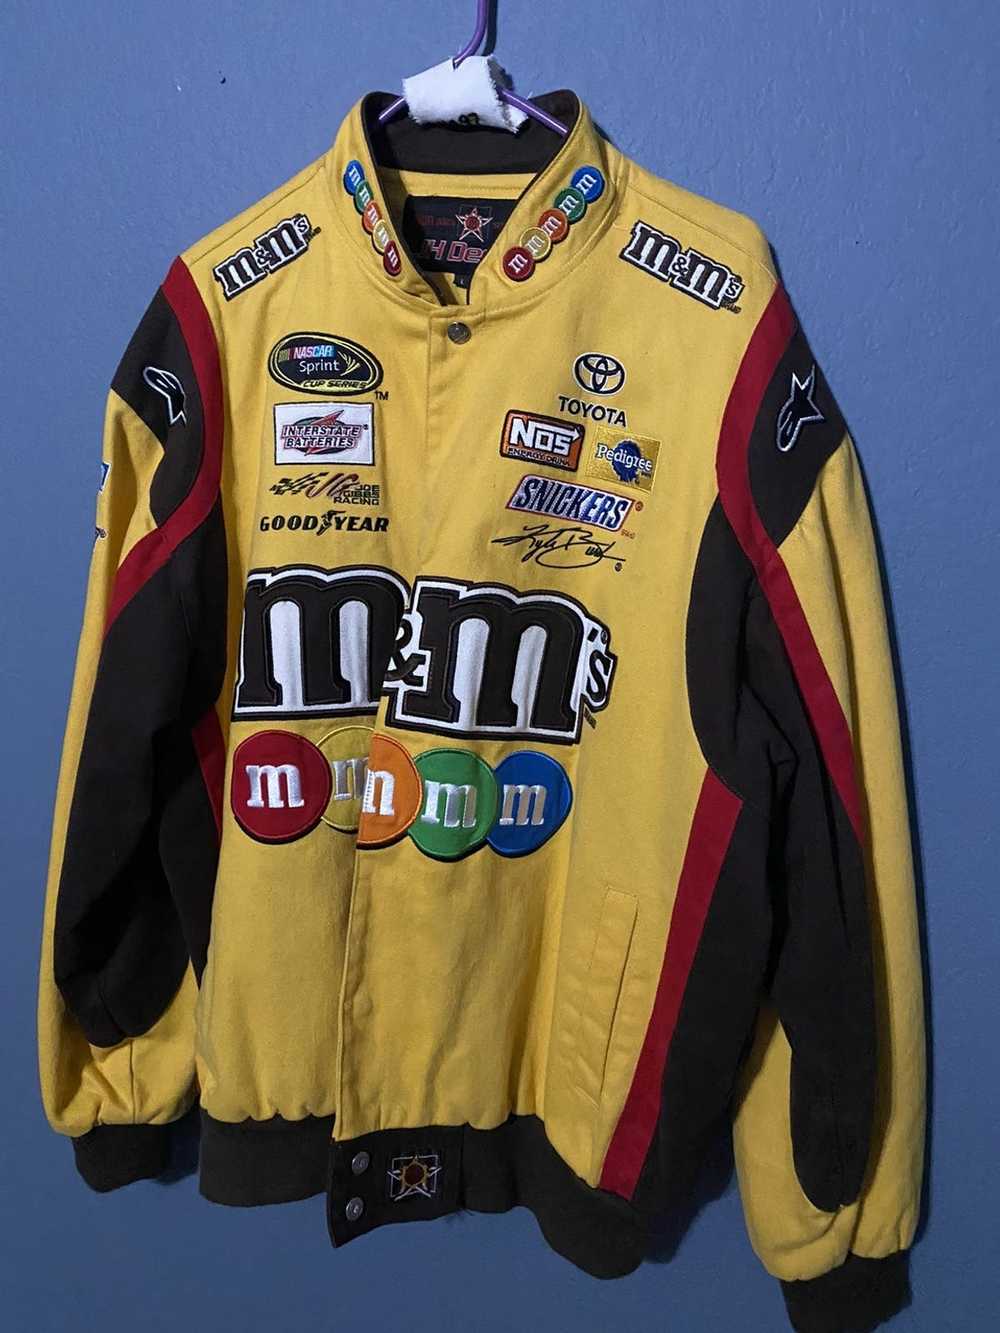 Vintage NASCAR jacket - image 1